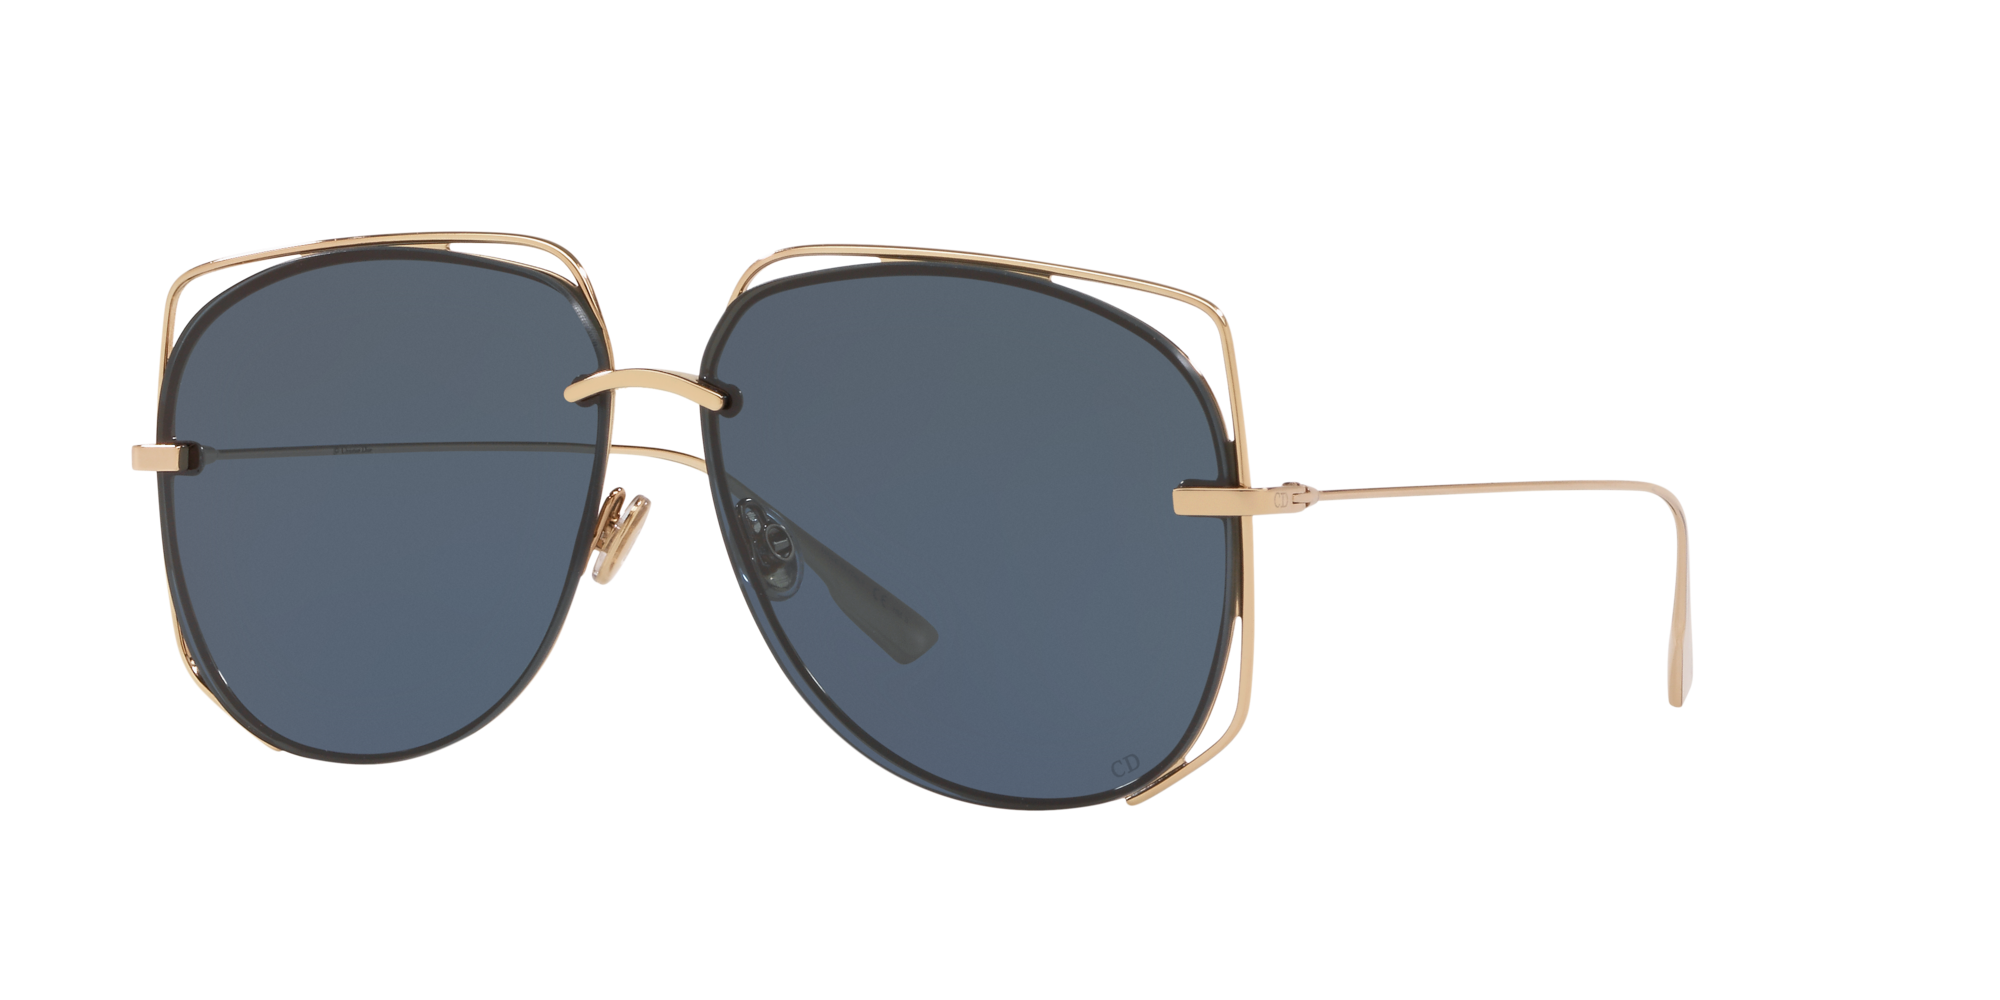 dior sunglasses round frame